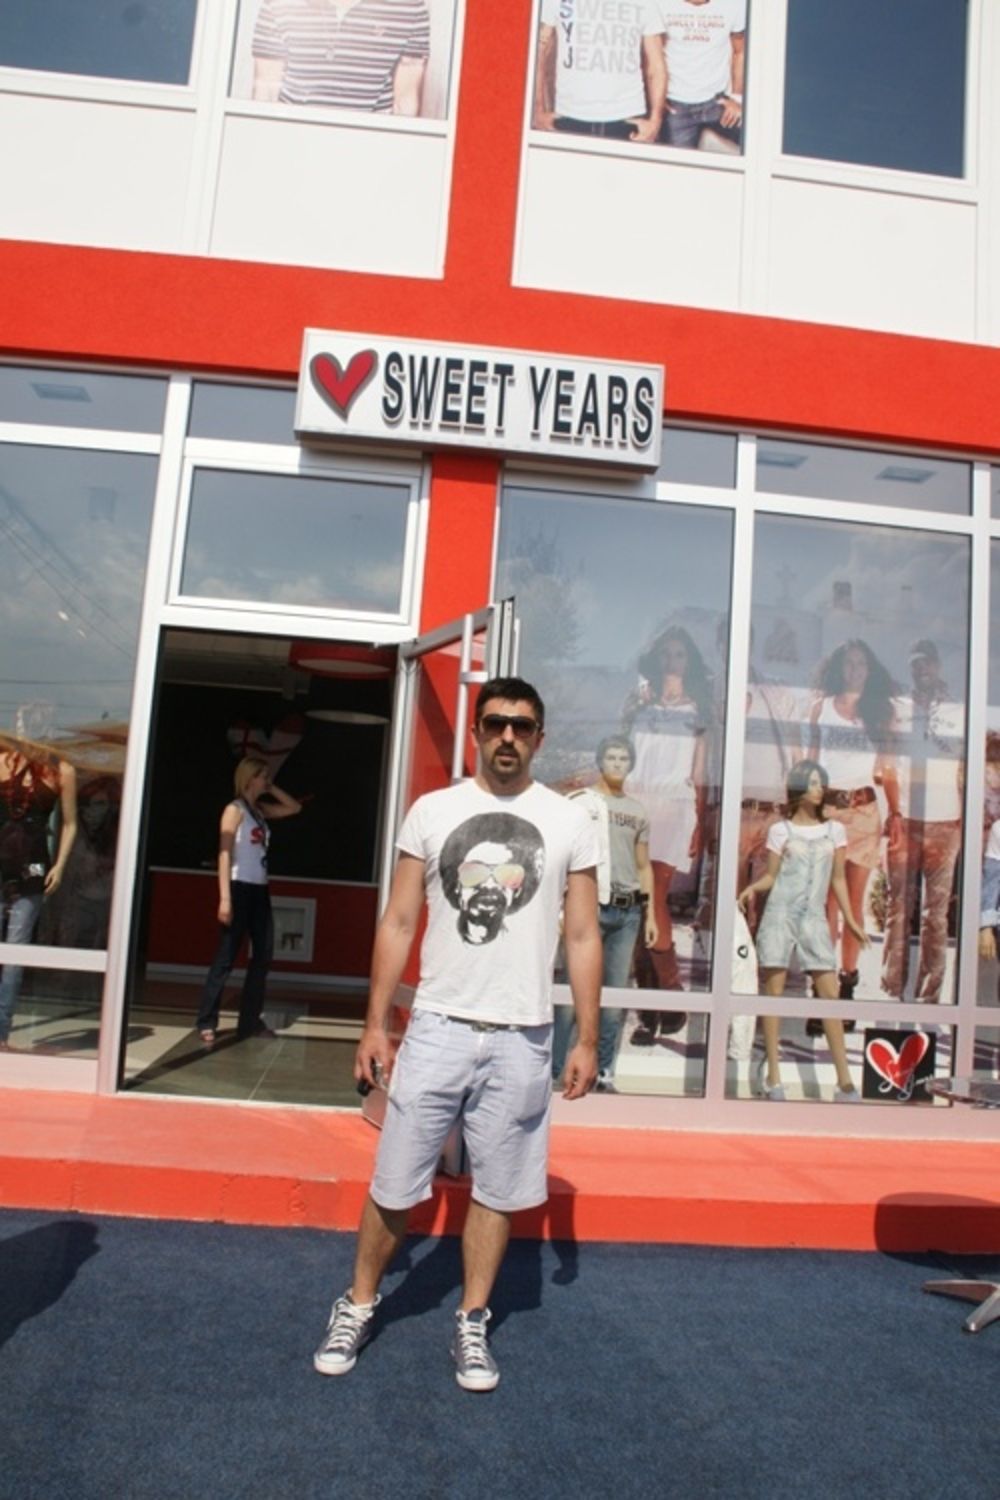 Proslavljeni fudbaler Dejan Stanković nedavno je otvorio butik Sweet Years brenda u Jagodini, gde se između ostalog sreo sa svojim kumom Zvonkom Milojevićem, koji nakon saobraćajne nesreće živi u tom gradu